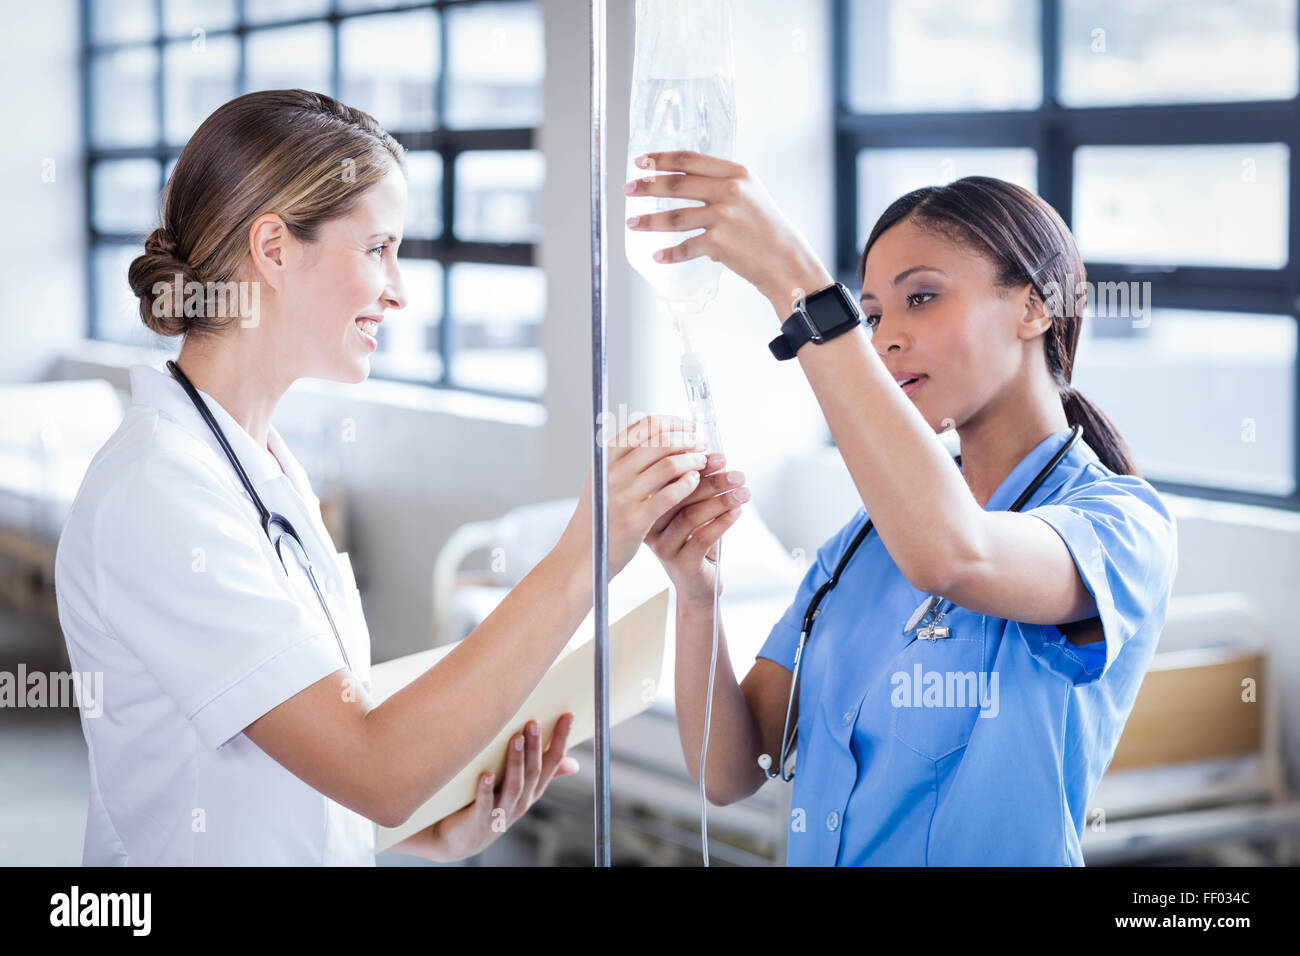 Medical team preparing an IV drip Stock Photo